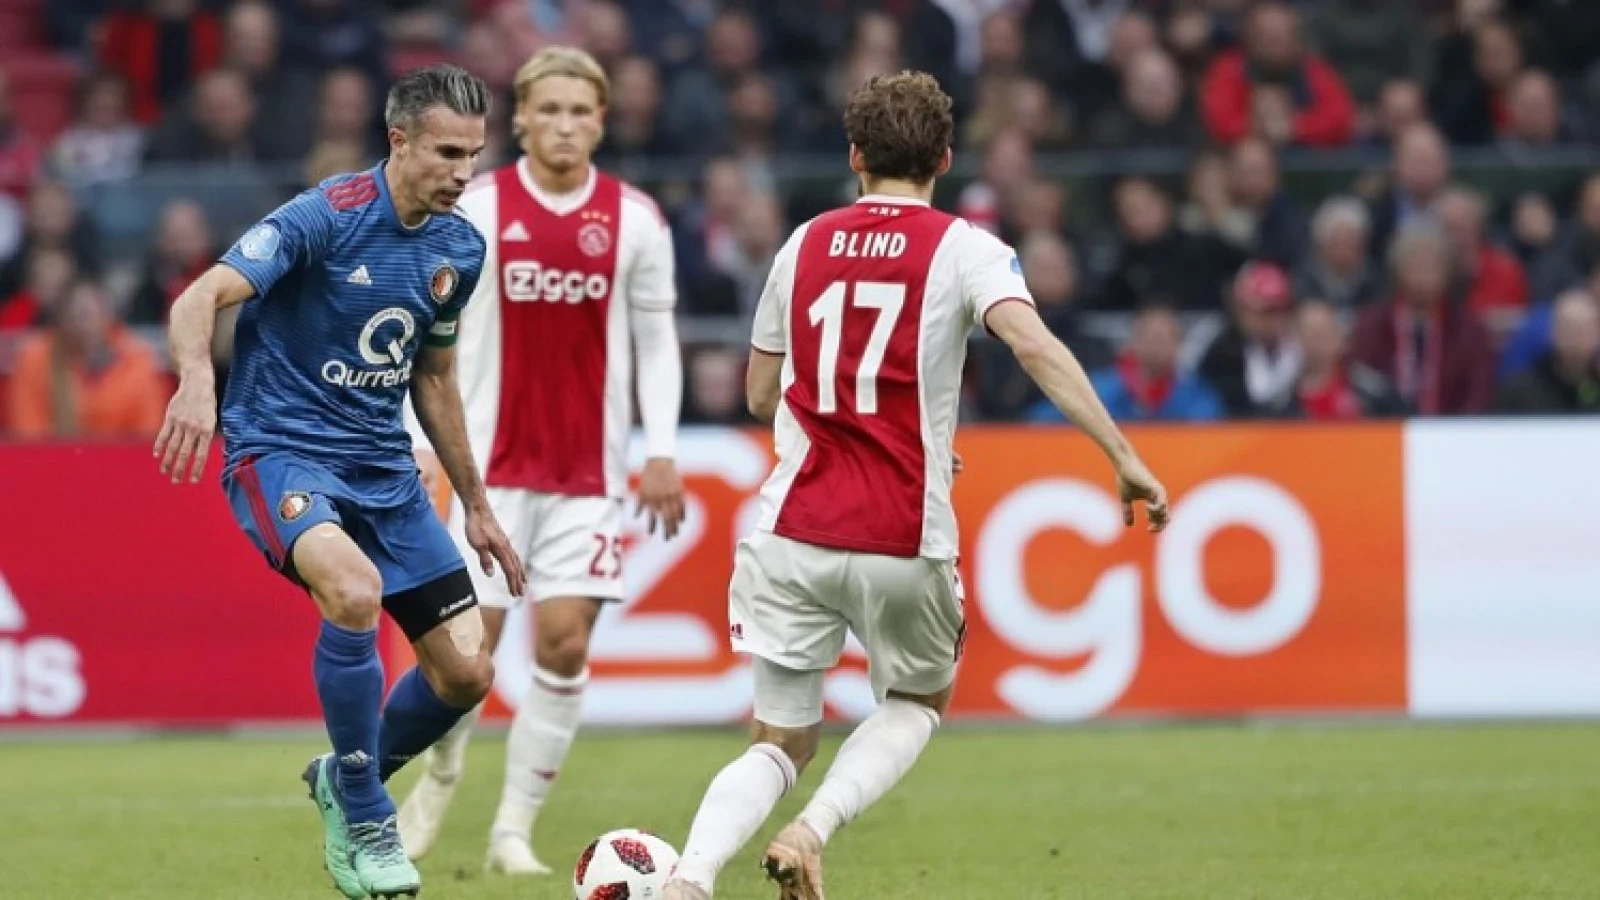 LIVE | Ajax - Feyenoord 3-0 | Einde wedstrijd